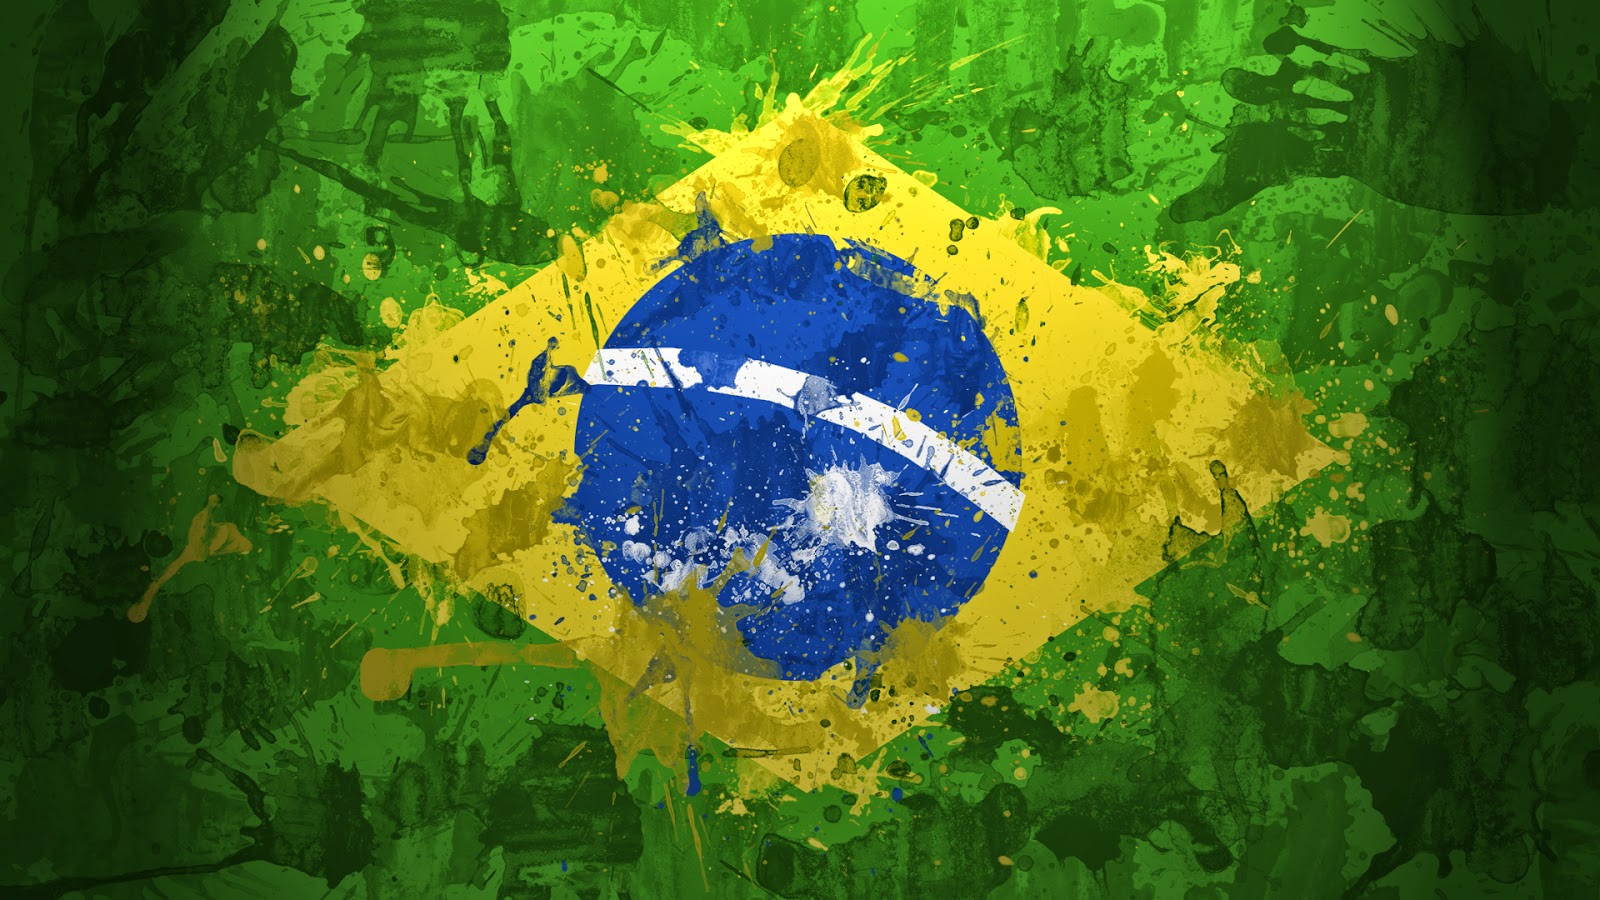 hinh-nen-world-cup-2014-brazil